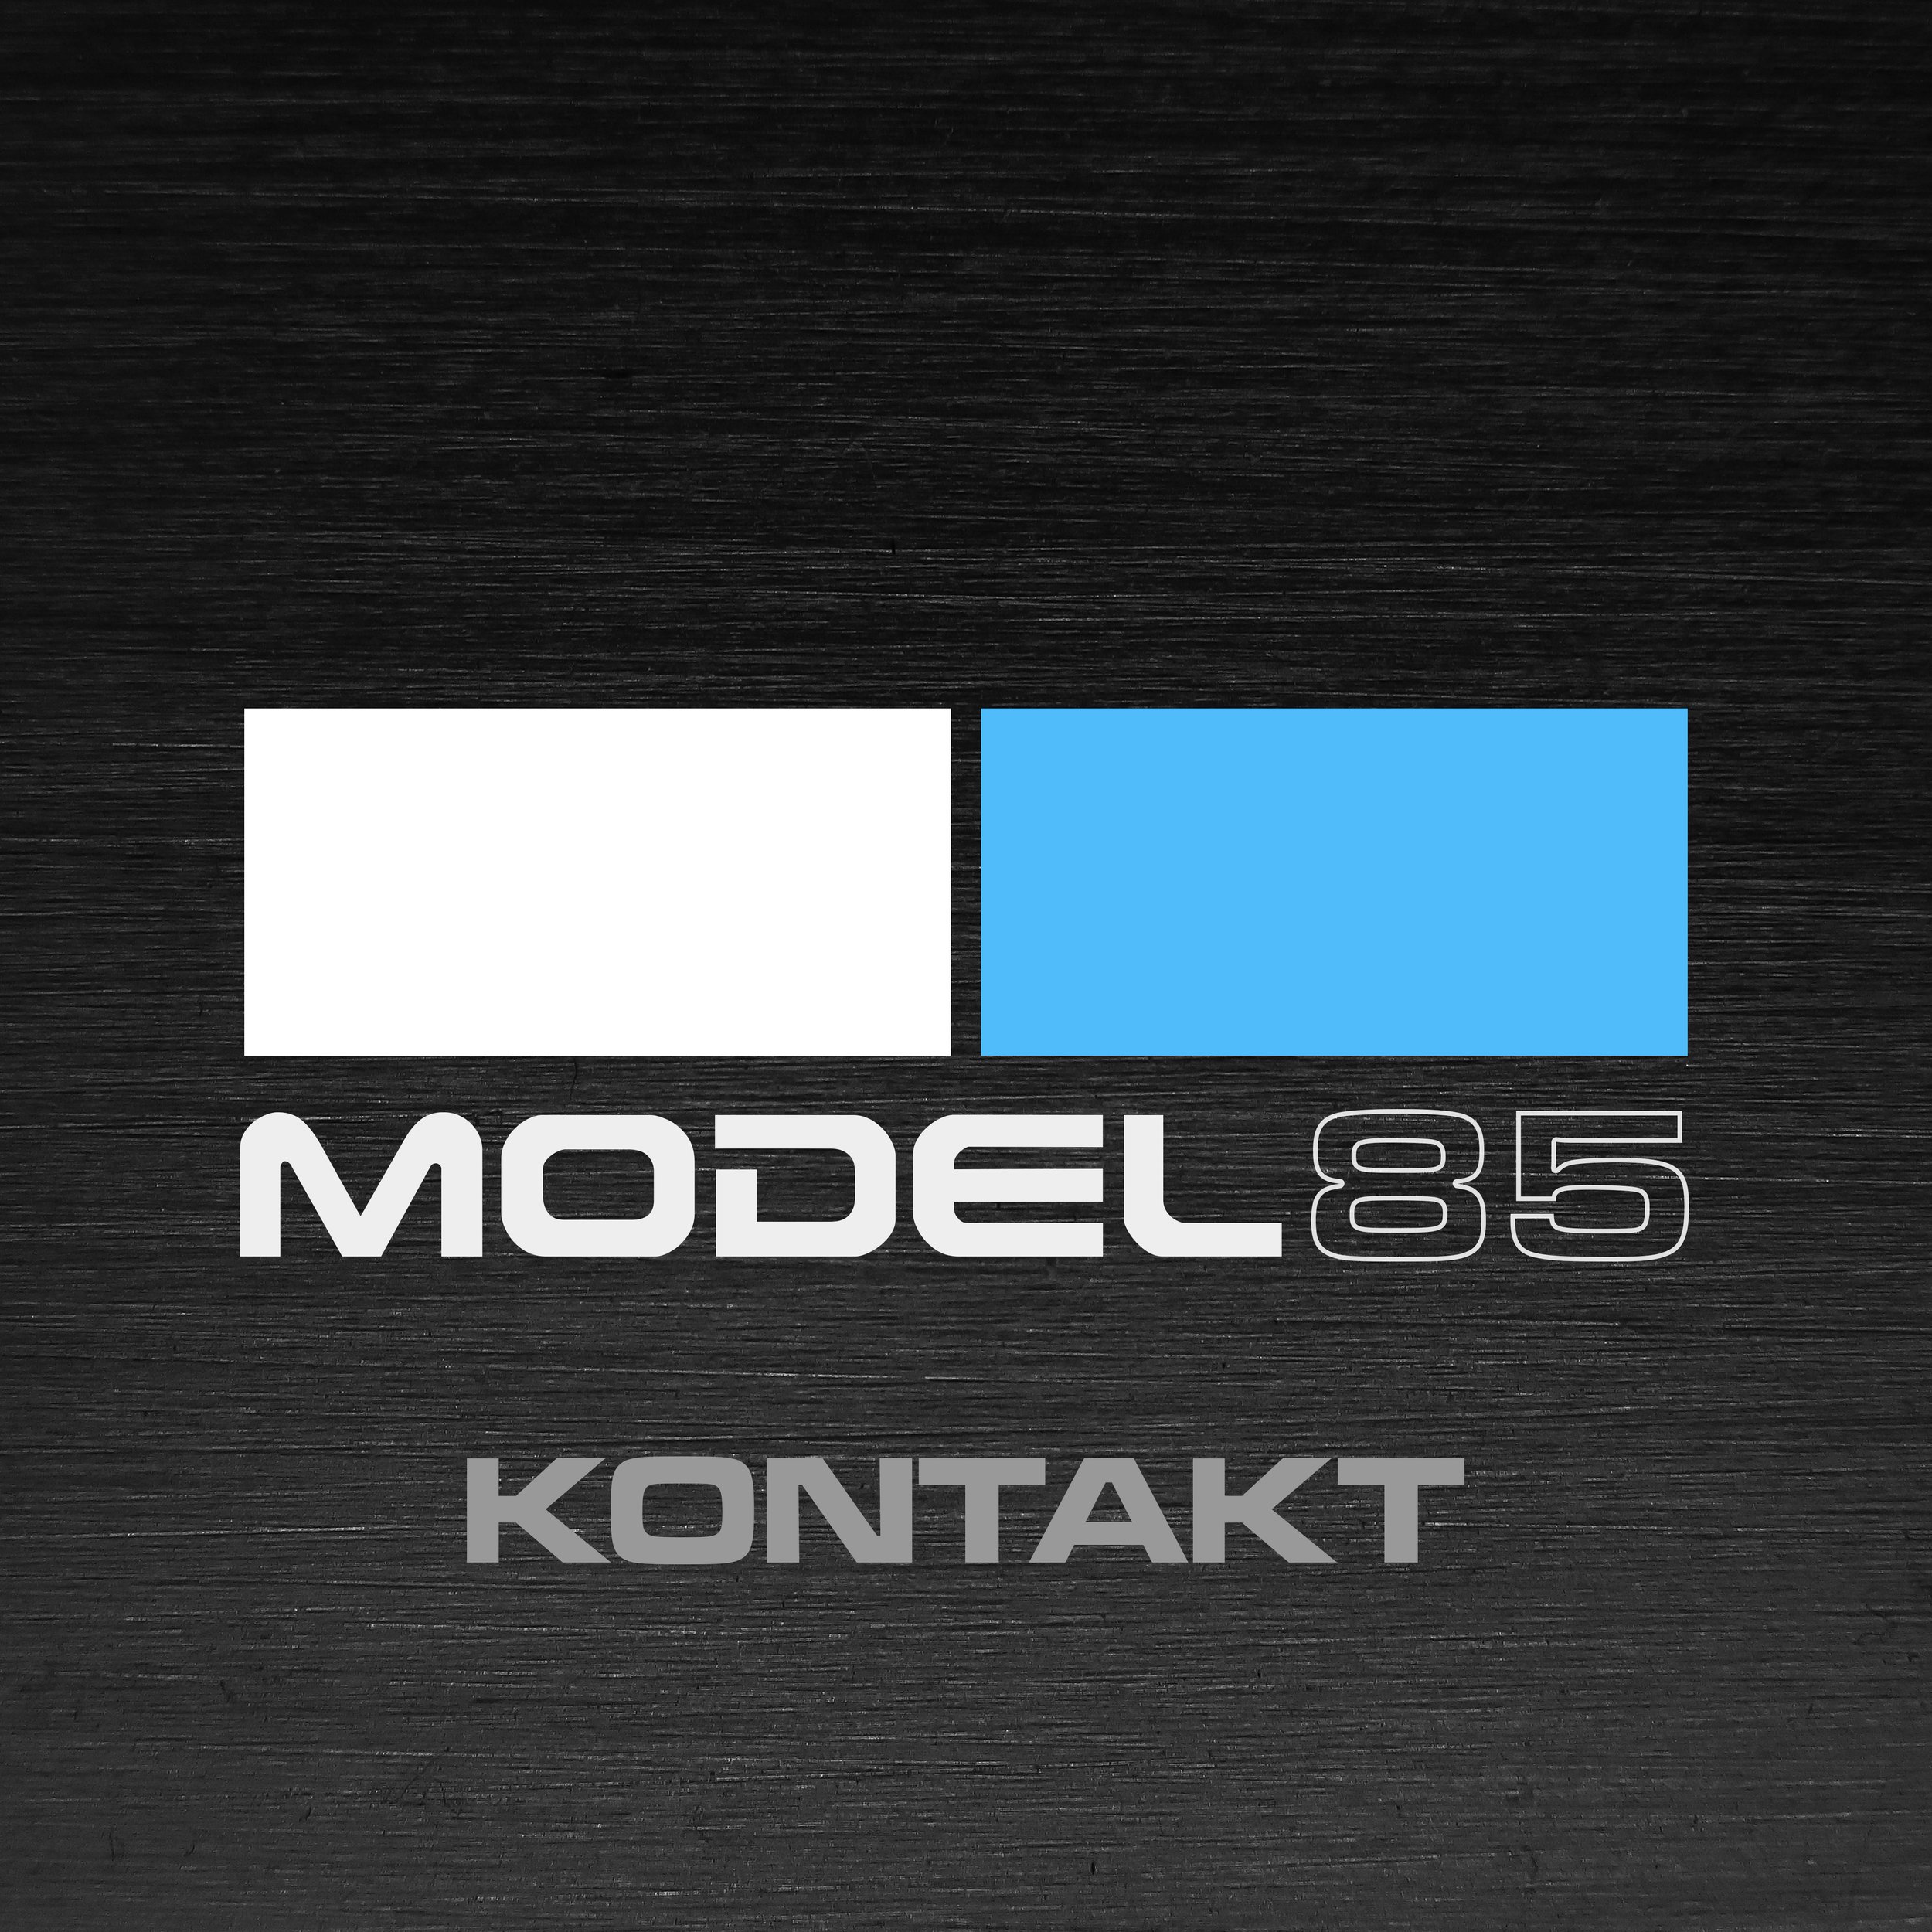 Model 85 Kontakt Logo.jpg